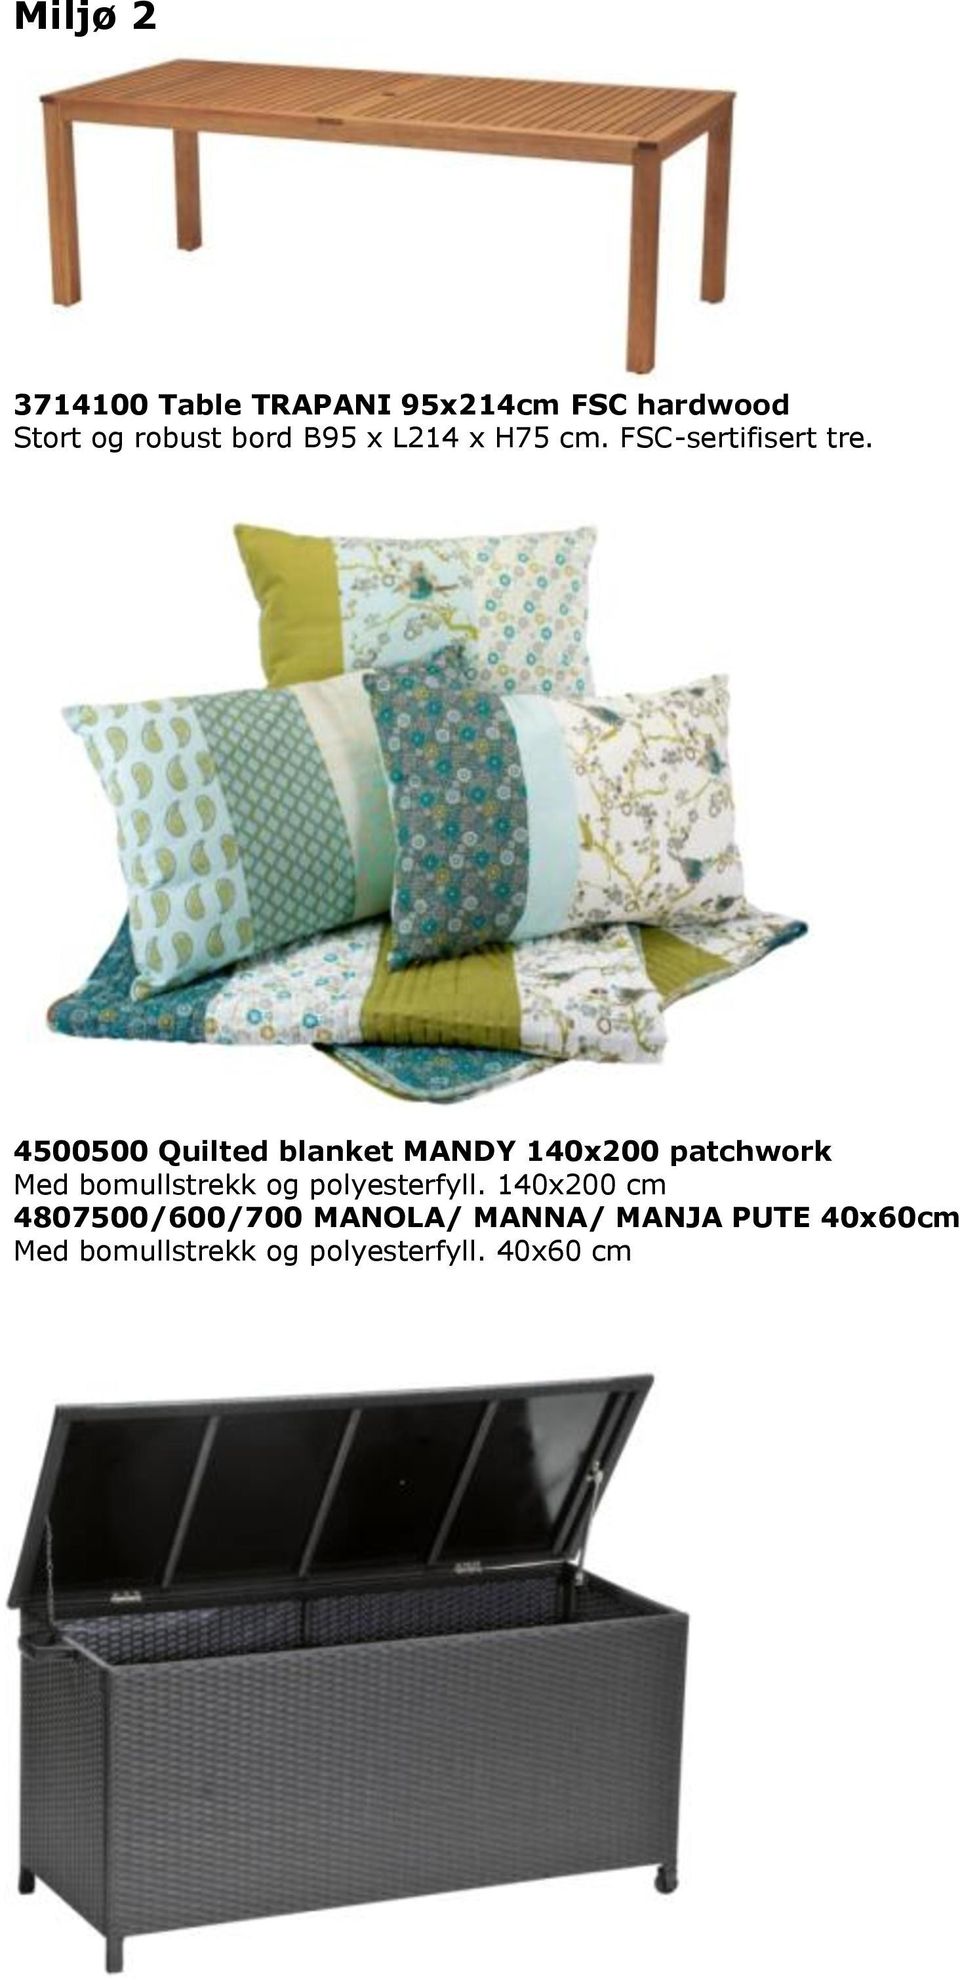 4500500 Quilted blanket MANDY 140x200 patchwork Med bomullstrekk og